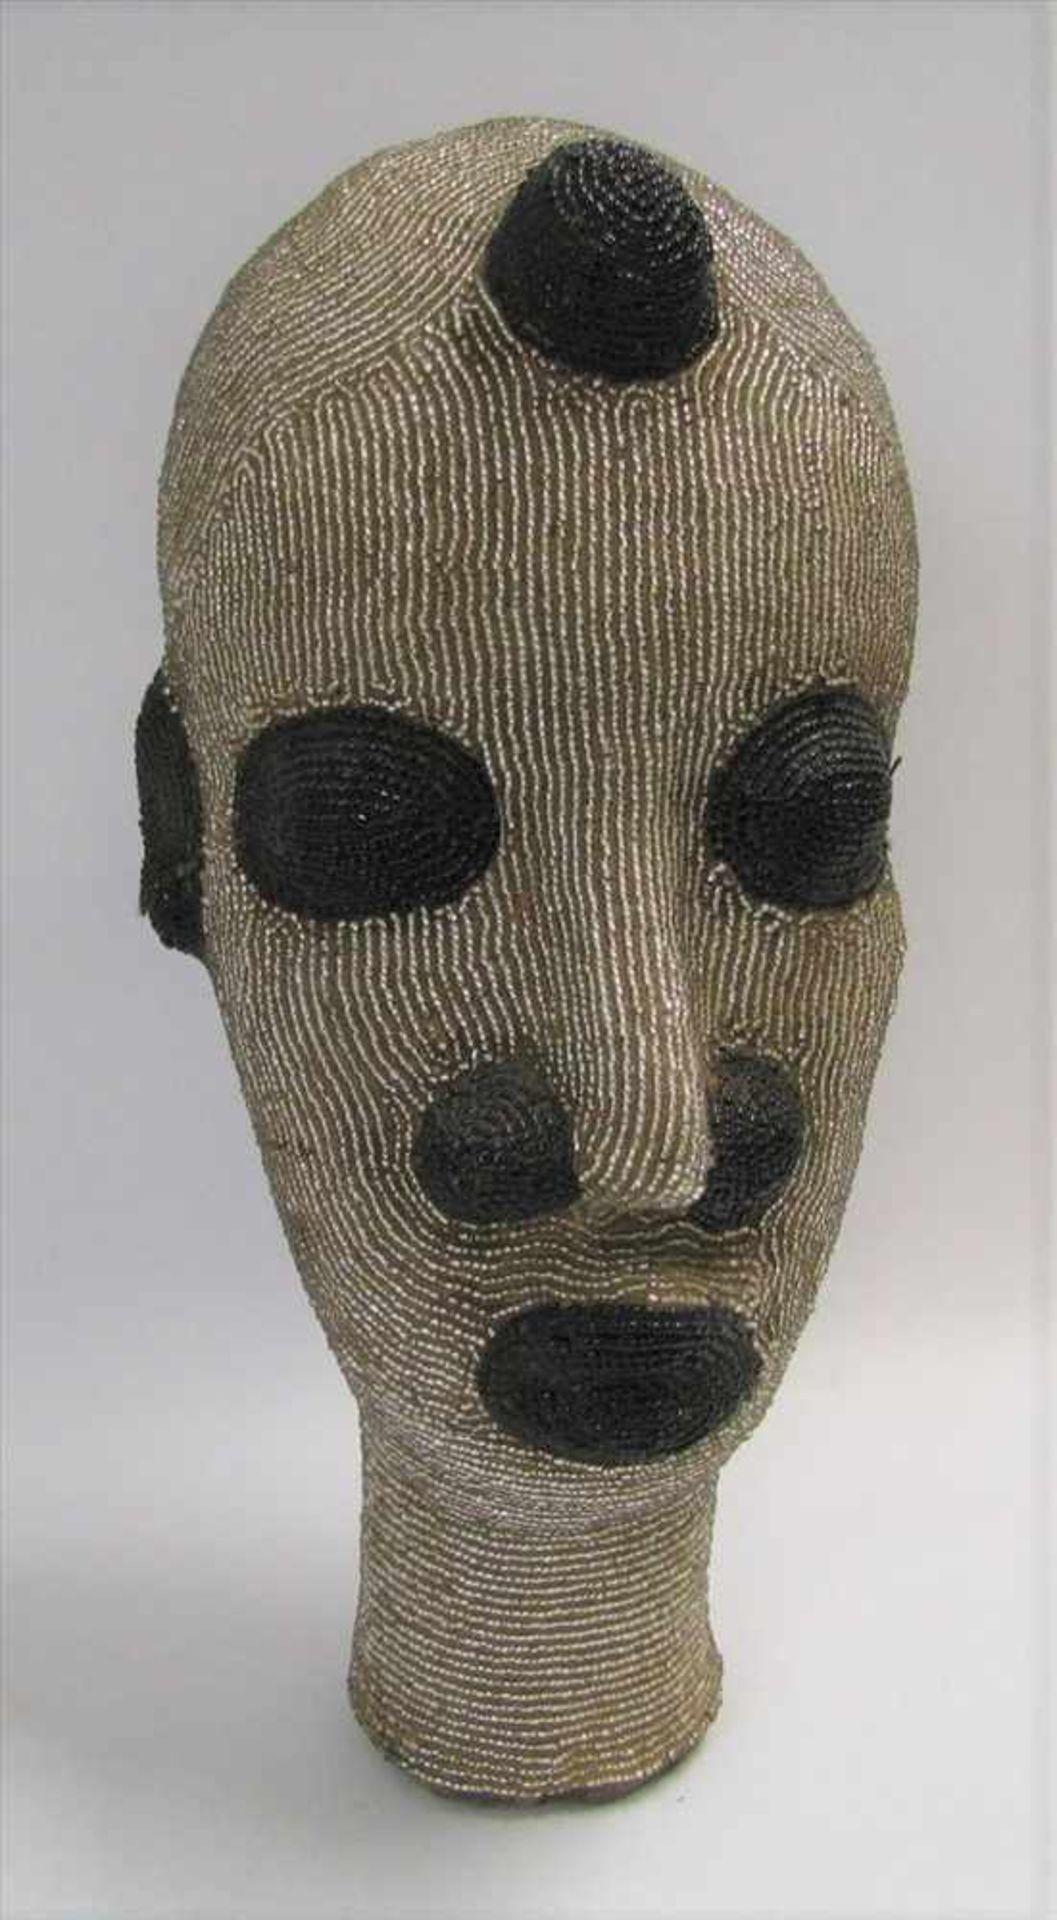 Kopf, Afrika, Ton mit silbernen und schwarzen Perlen verziert, 29 x 14 cm.